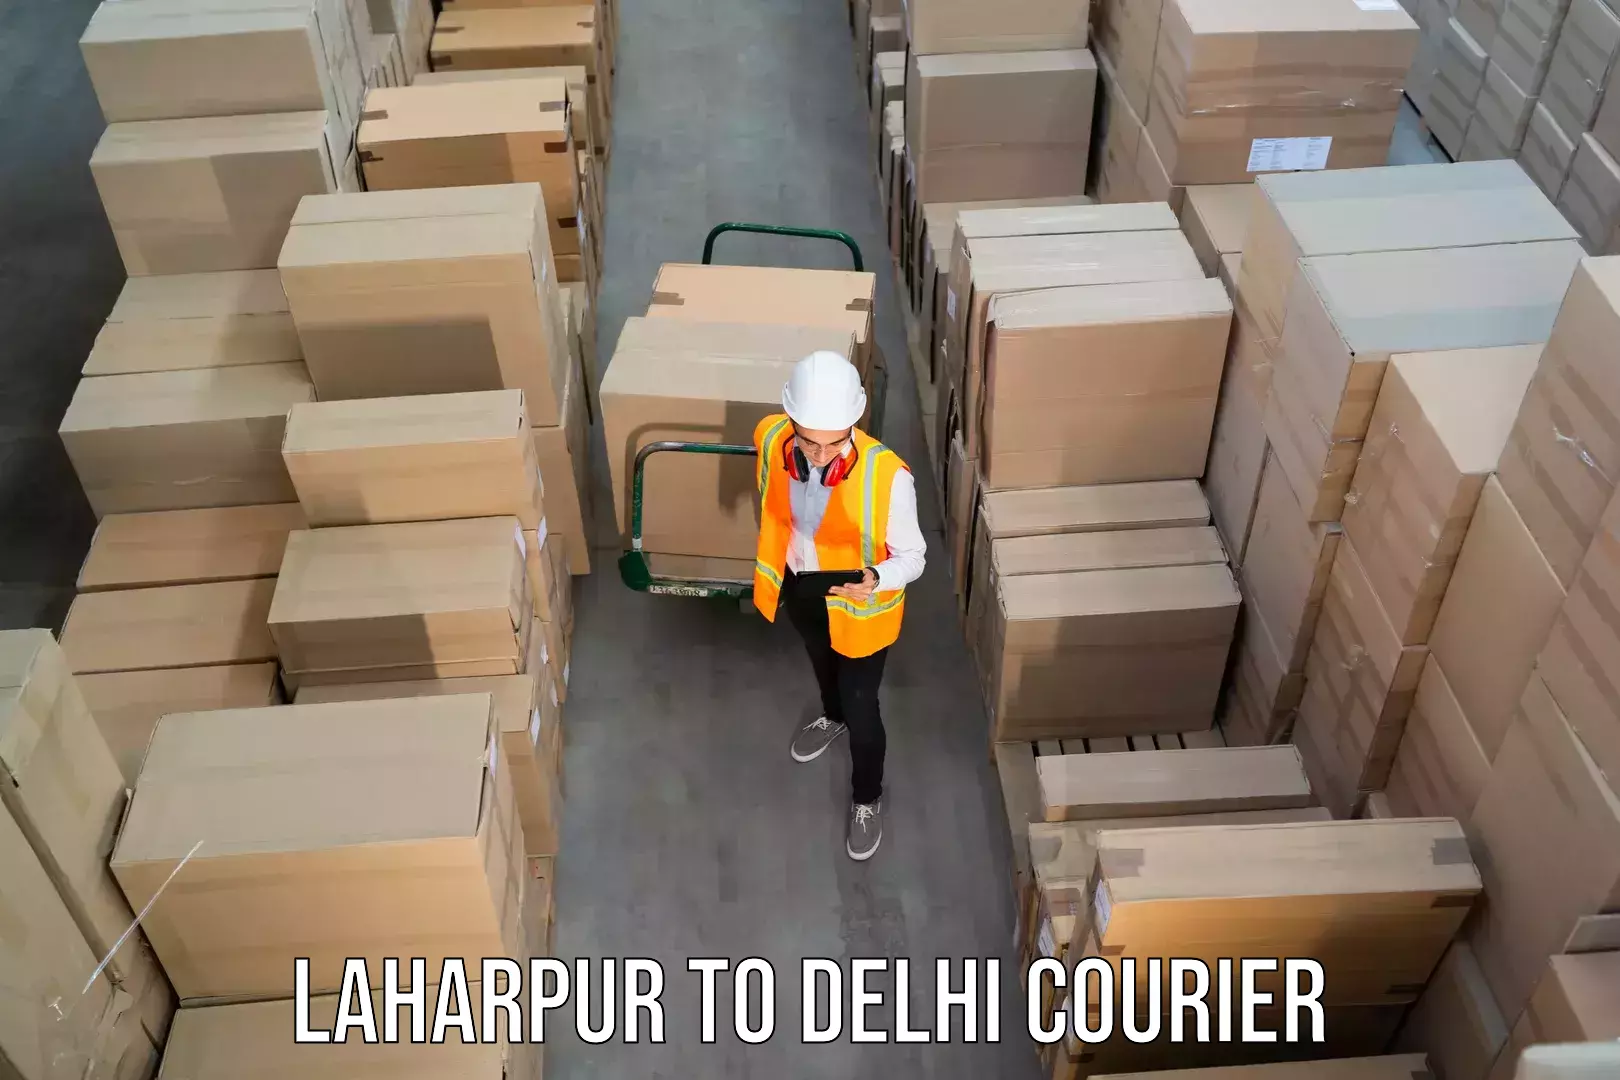 Return courier service in Laharpur to Ashok Vihar